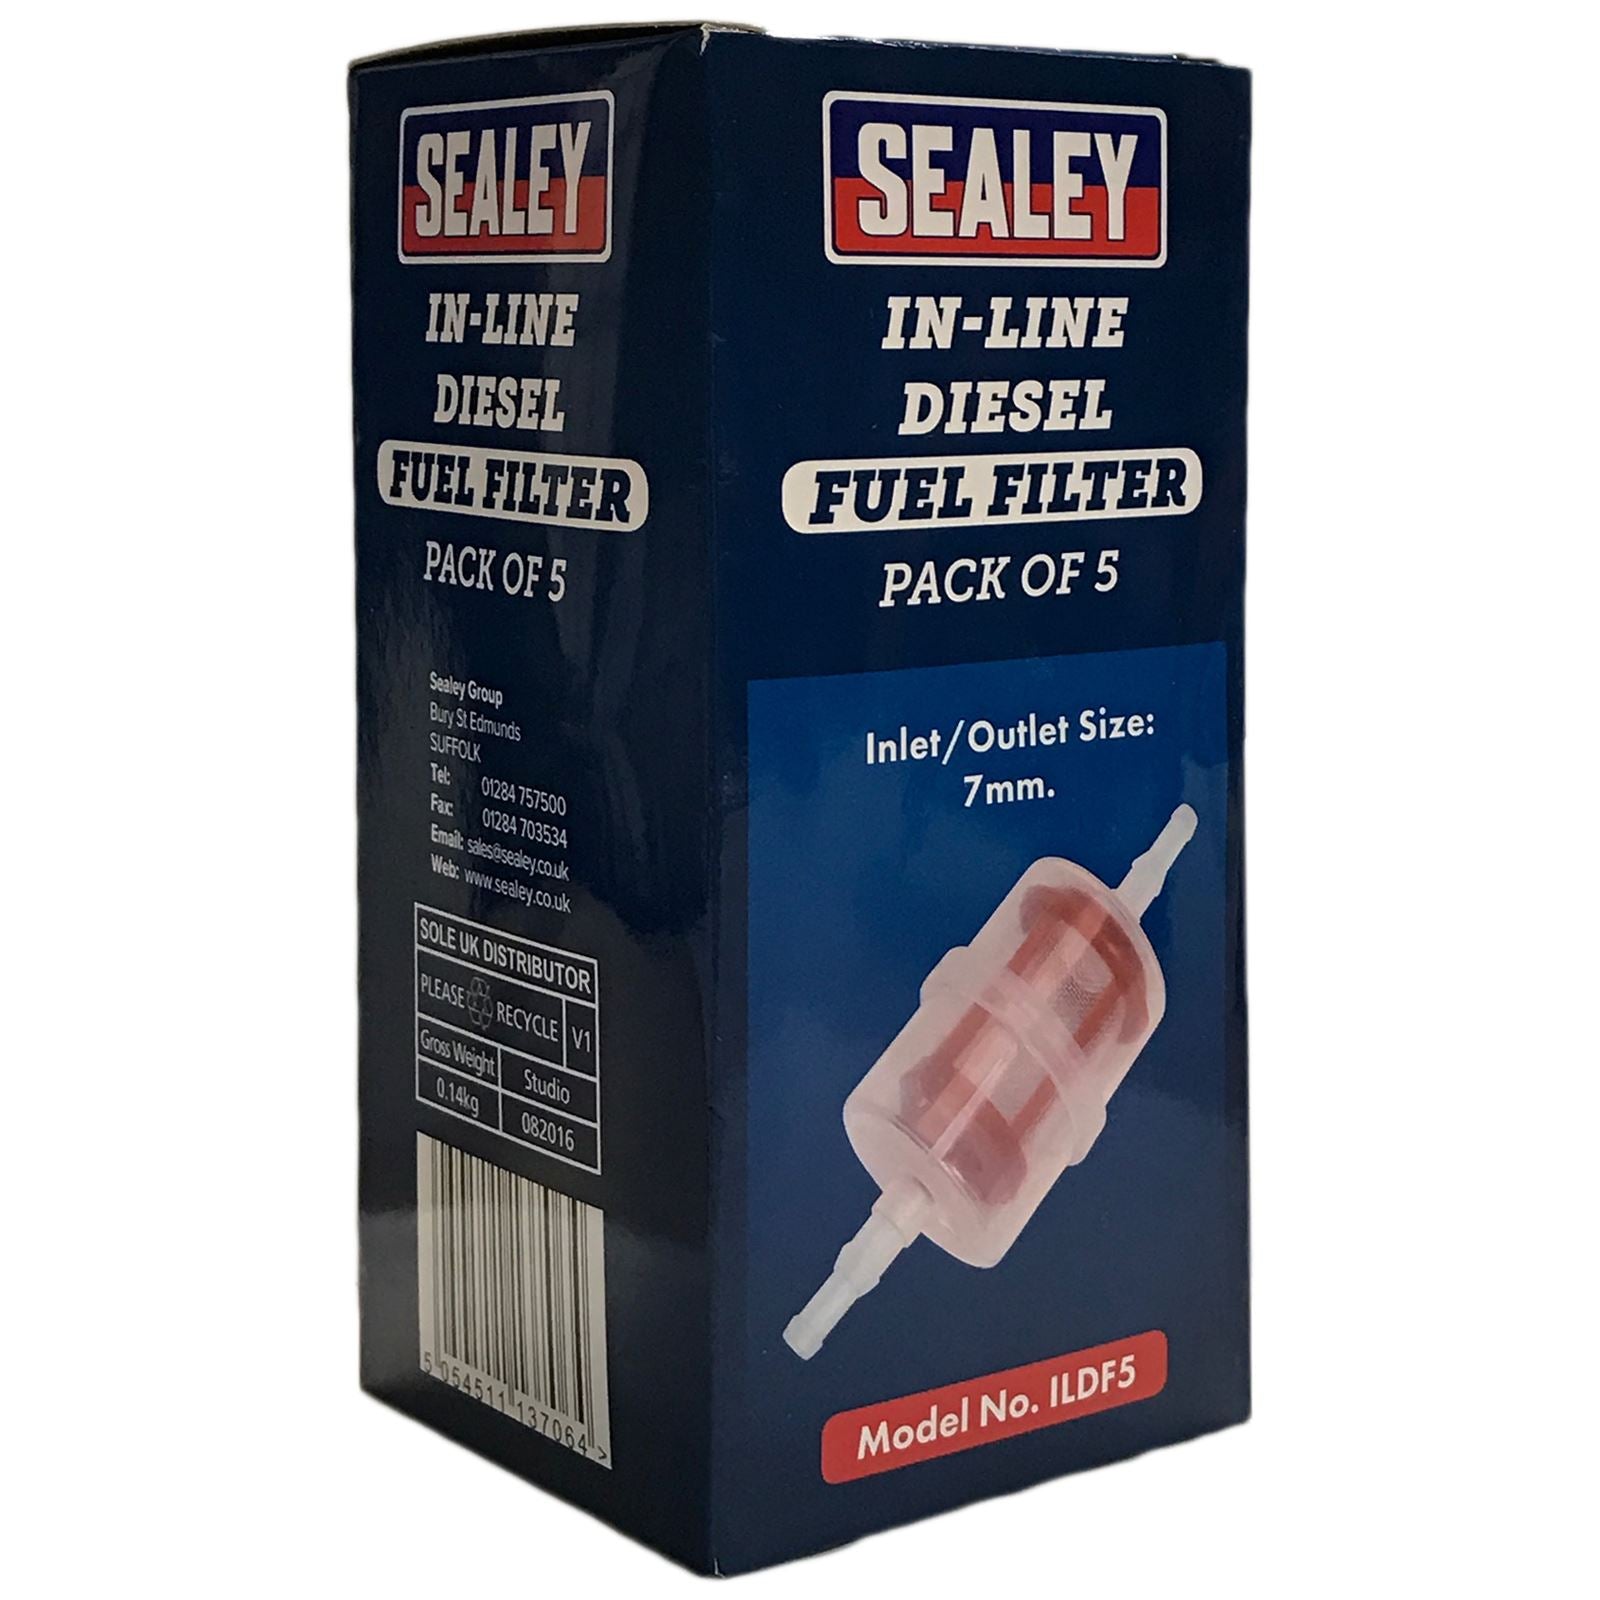 Sealey In Line Diesel Fuel Filter 7mm Inlet/Outlet 5 Pack Filter Plant